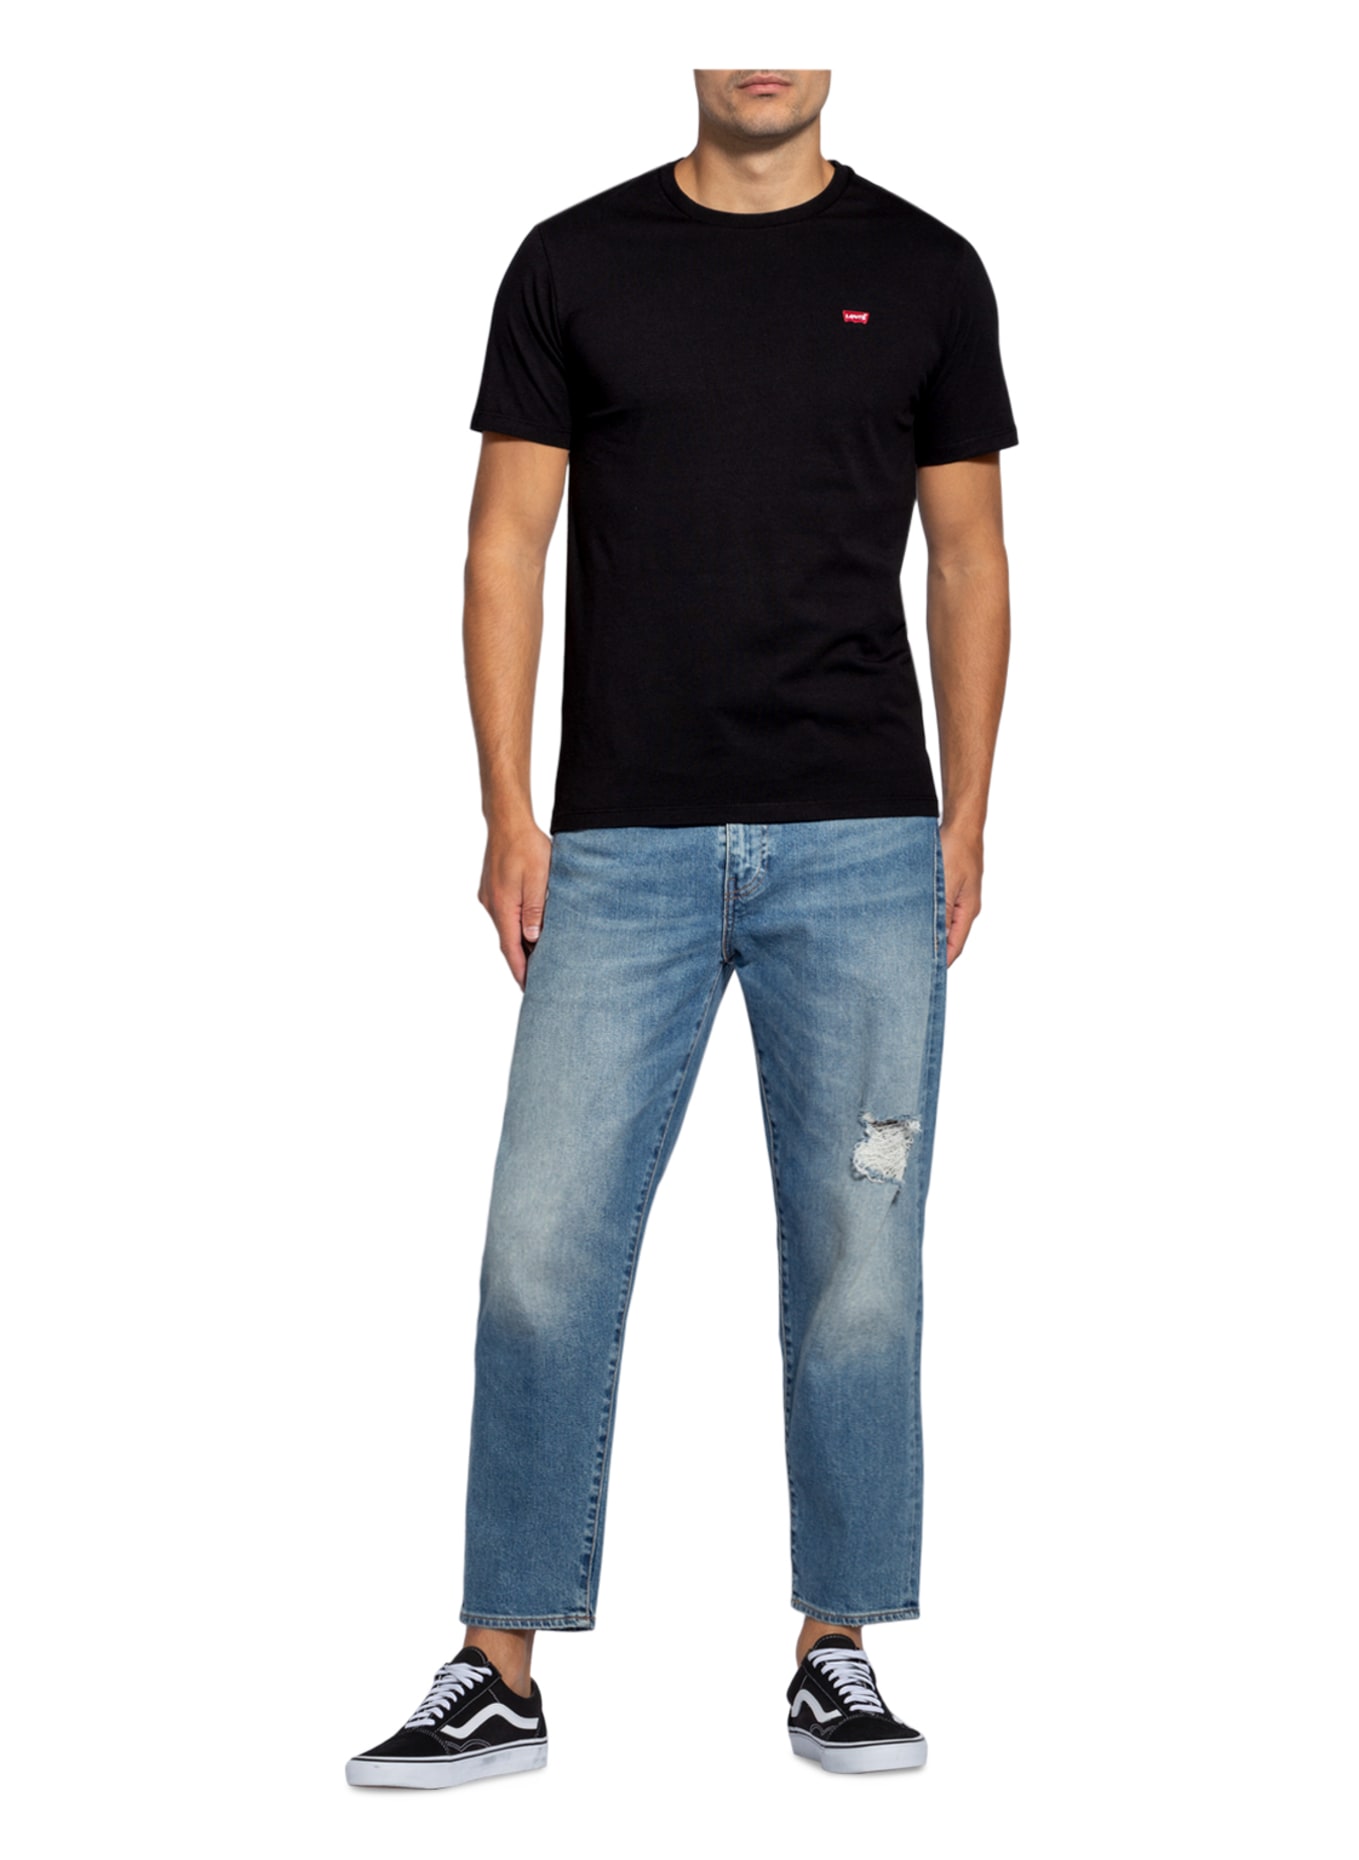 Levi's® T-shirt, Color: BLACK (Image 2)